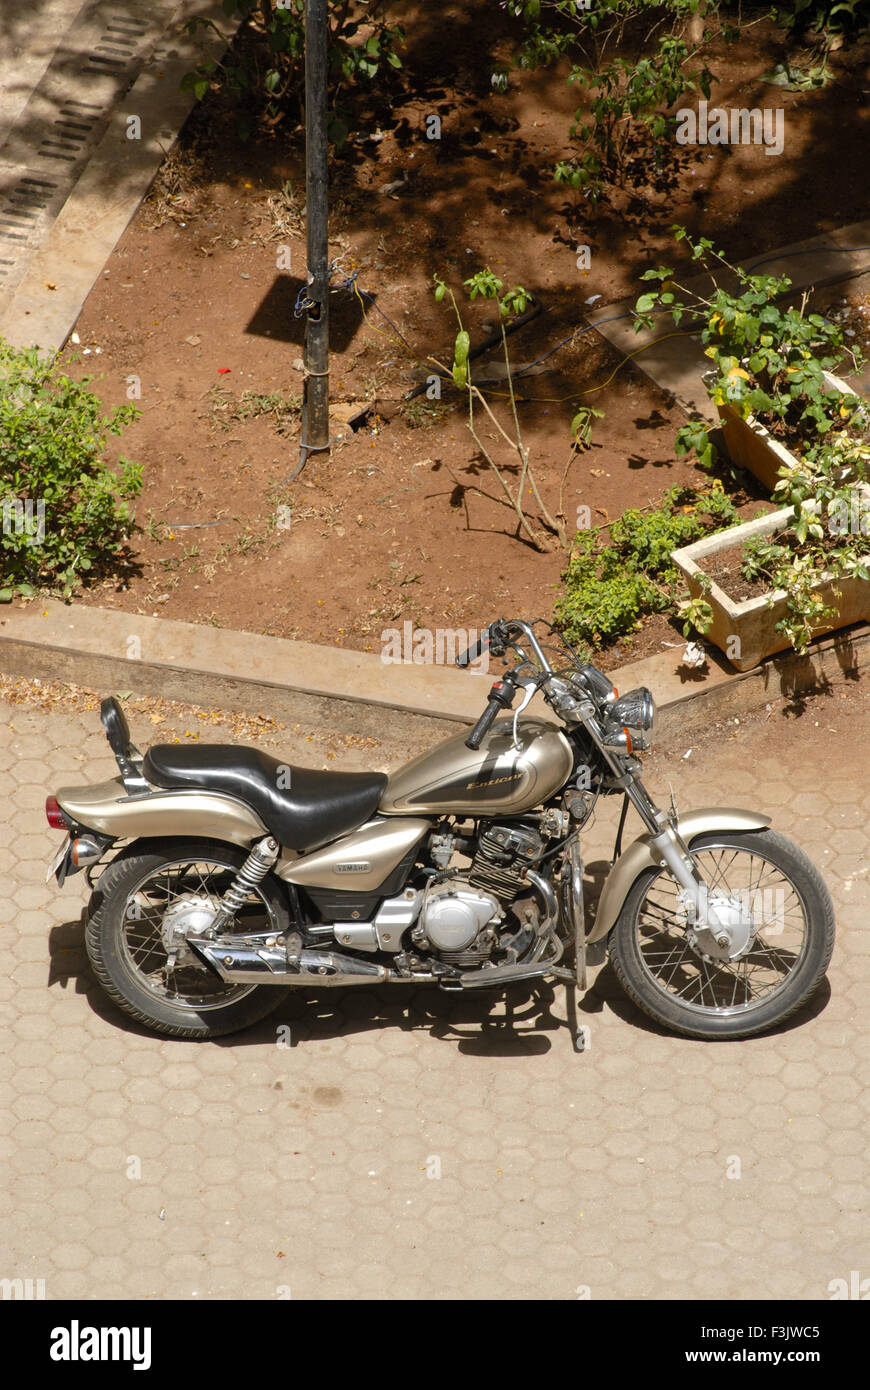 Enticer a two wheeler of Yamaha motor cycle bike Mumbai Bombay Maharashtra India Stock Photo